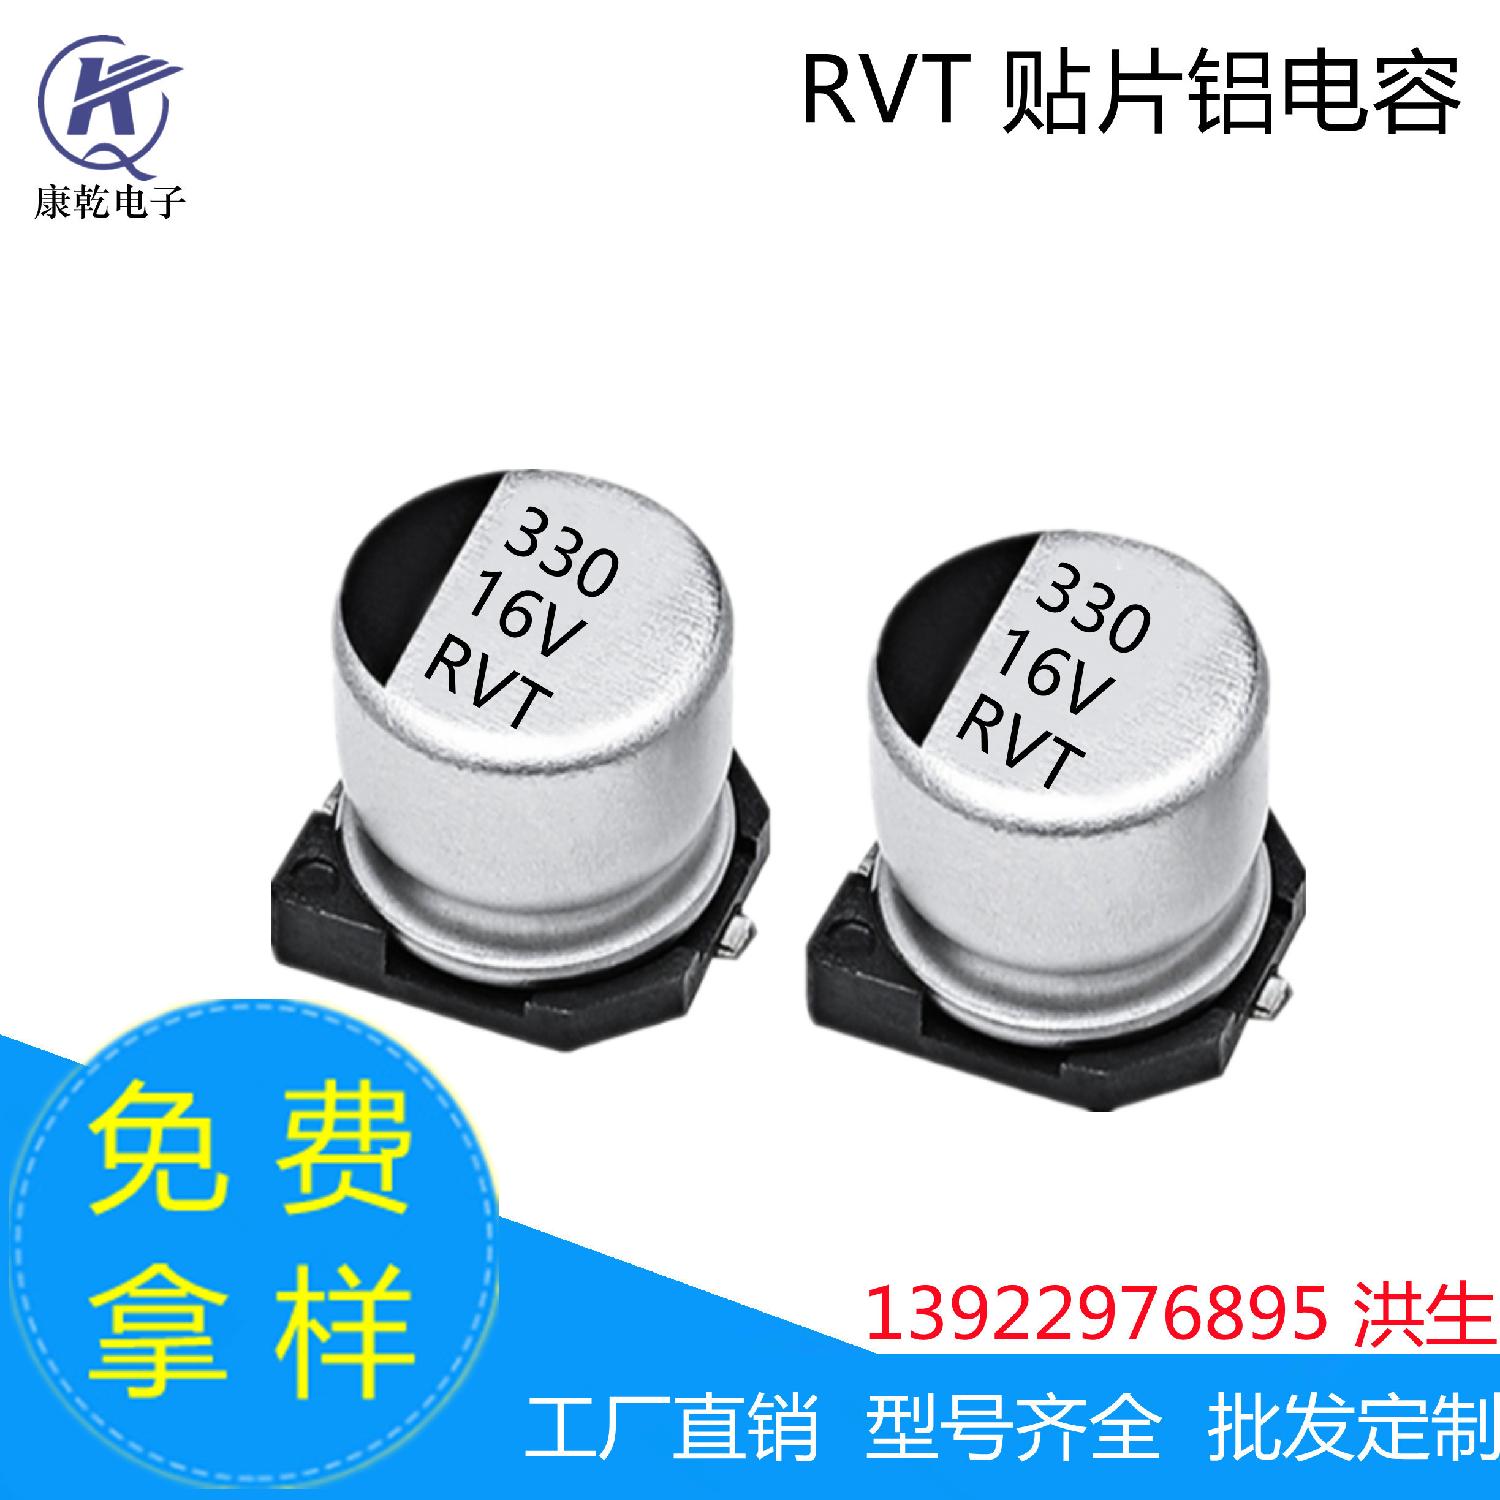 厂家现货RVT贴片铝电解电容器 330uF 16V 8*10.2mm 高品质 耐高温 330uF 16V